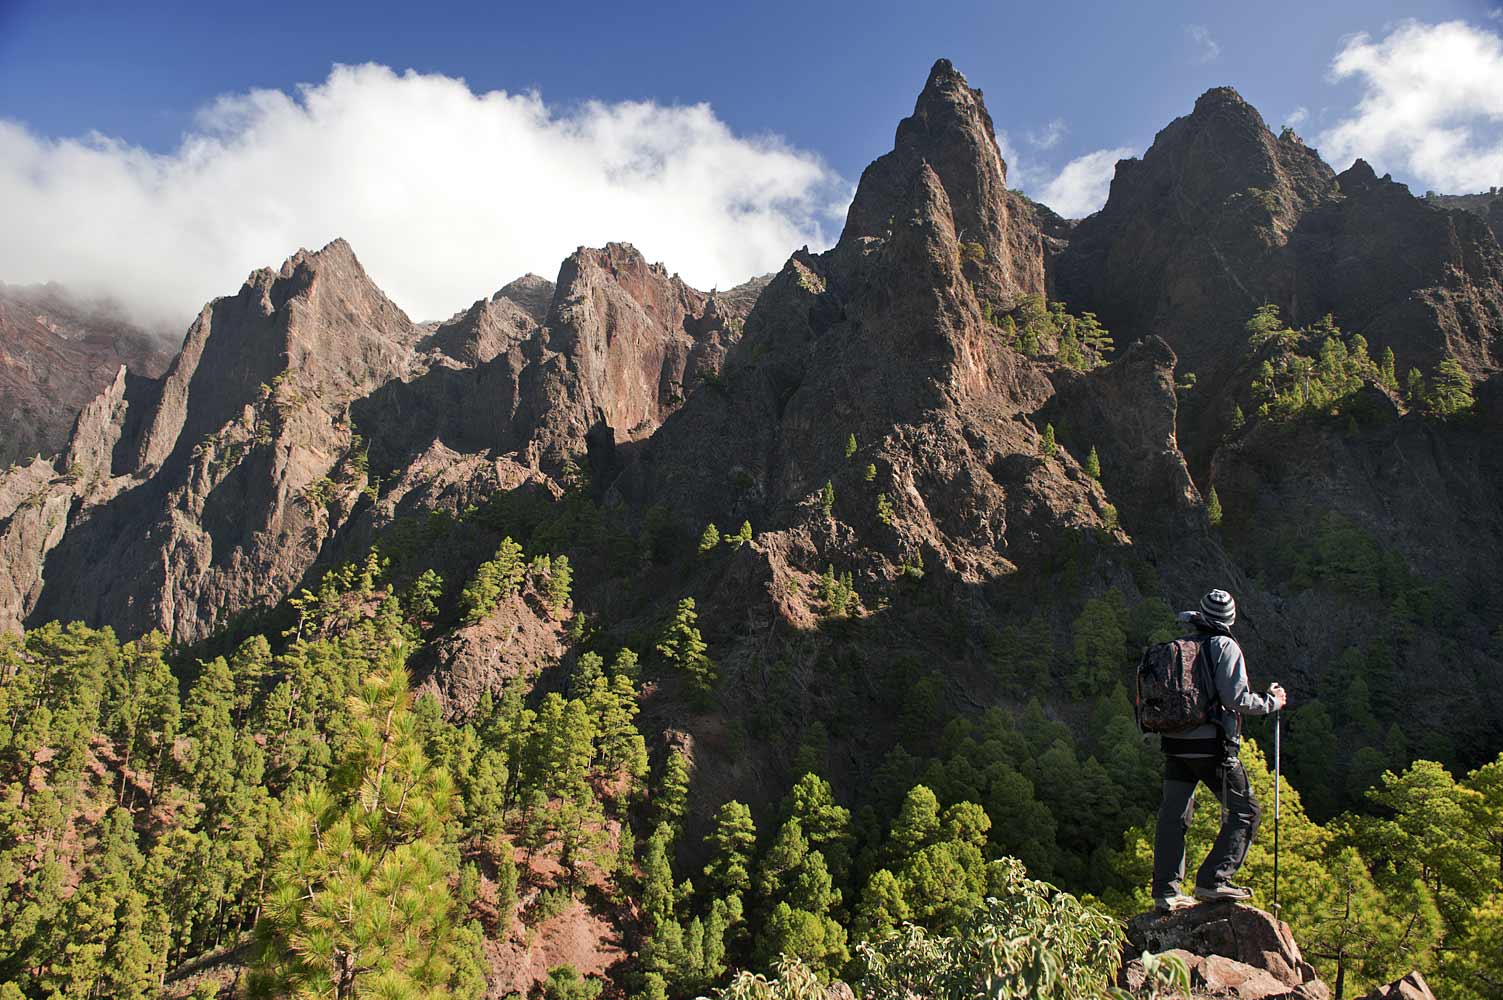 El parque de la Caldera de Taburiente es un área protegida situada en la isla de La Palma, de naturaleza volcánica